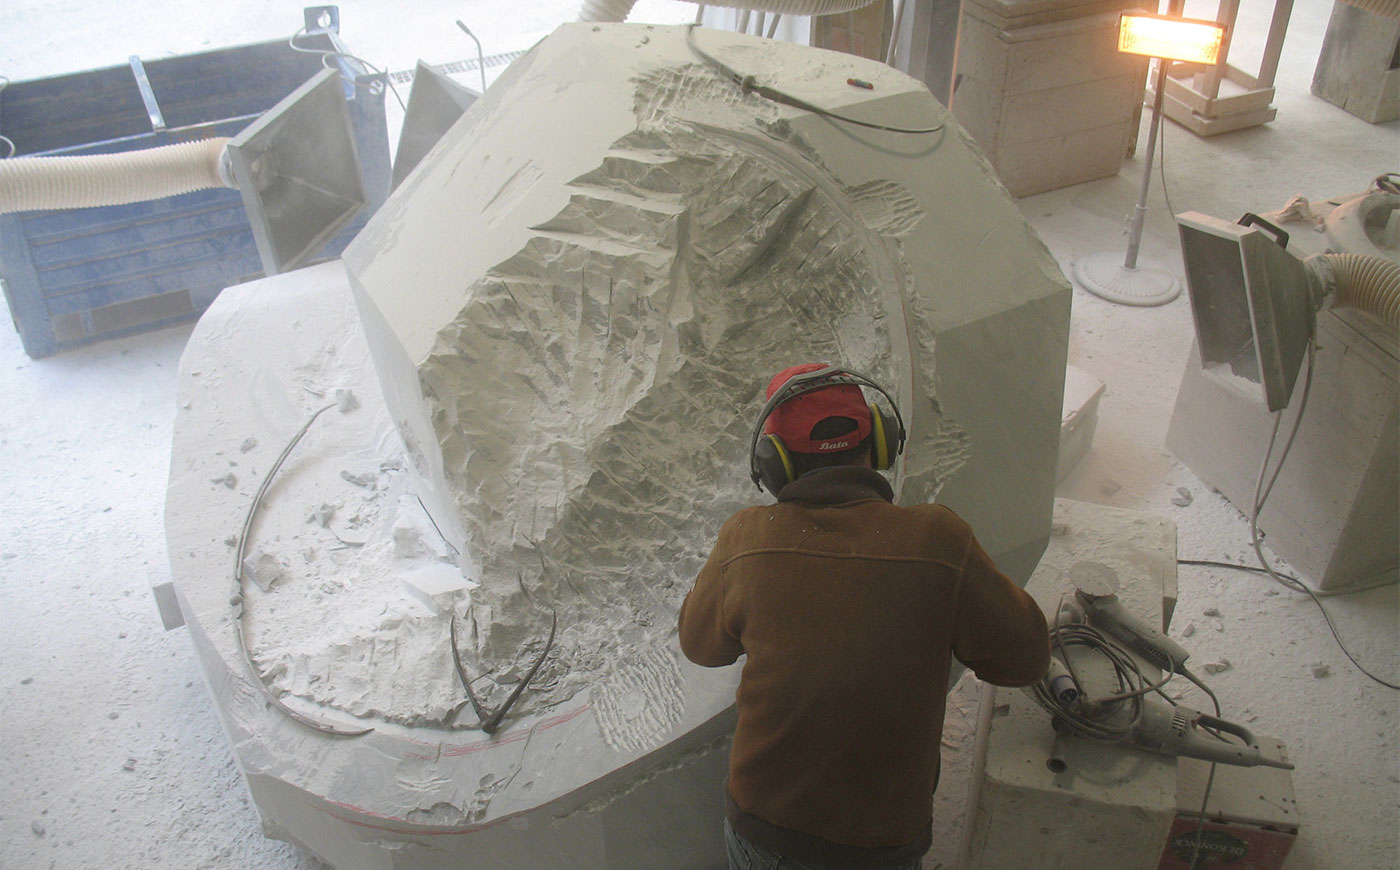 Richard Erdman modern sculpture workshop process